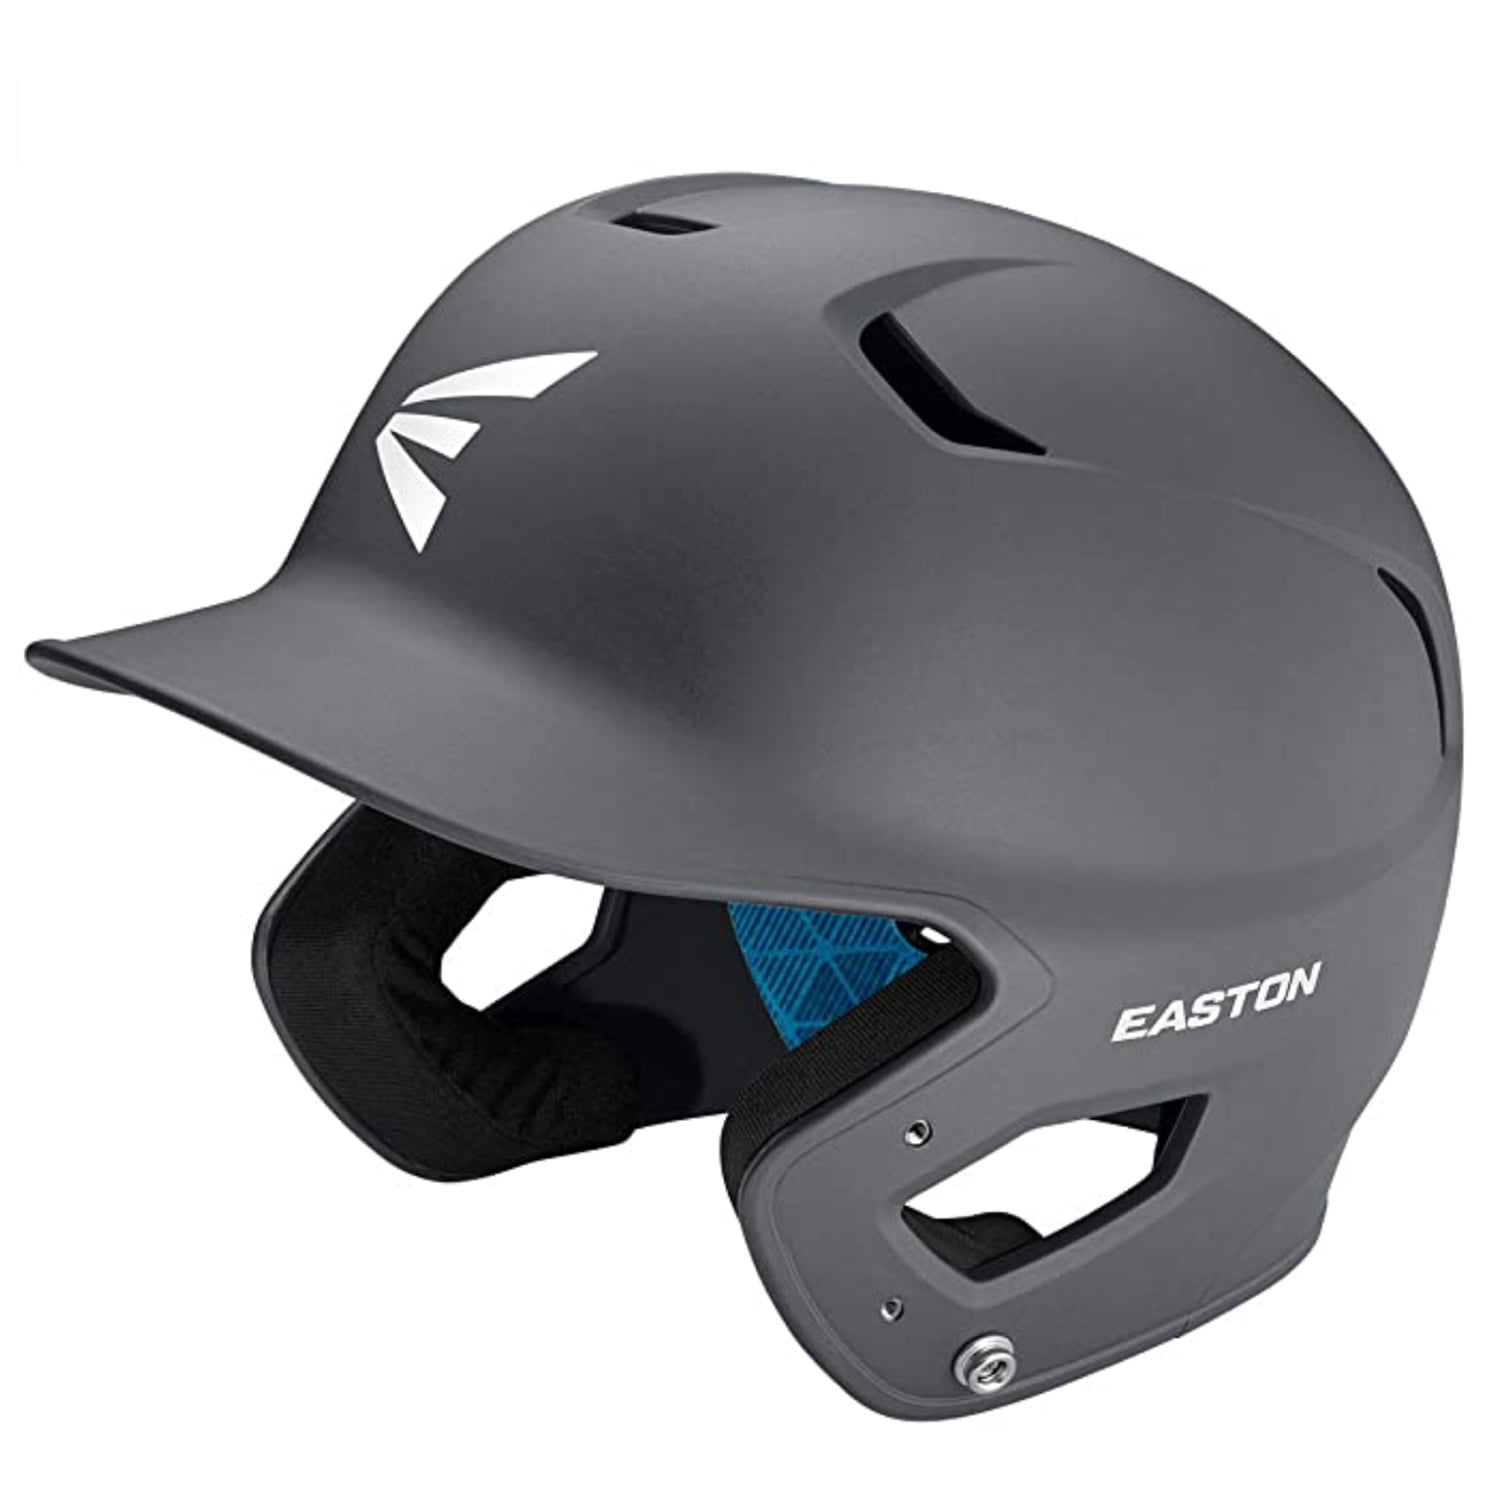 Aftermarket Helmet Fit Kit Pads Set for Easton Natural Series Batting Baseball 